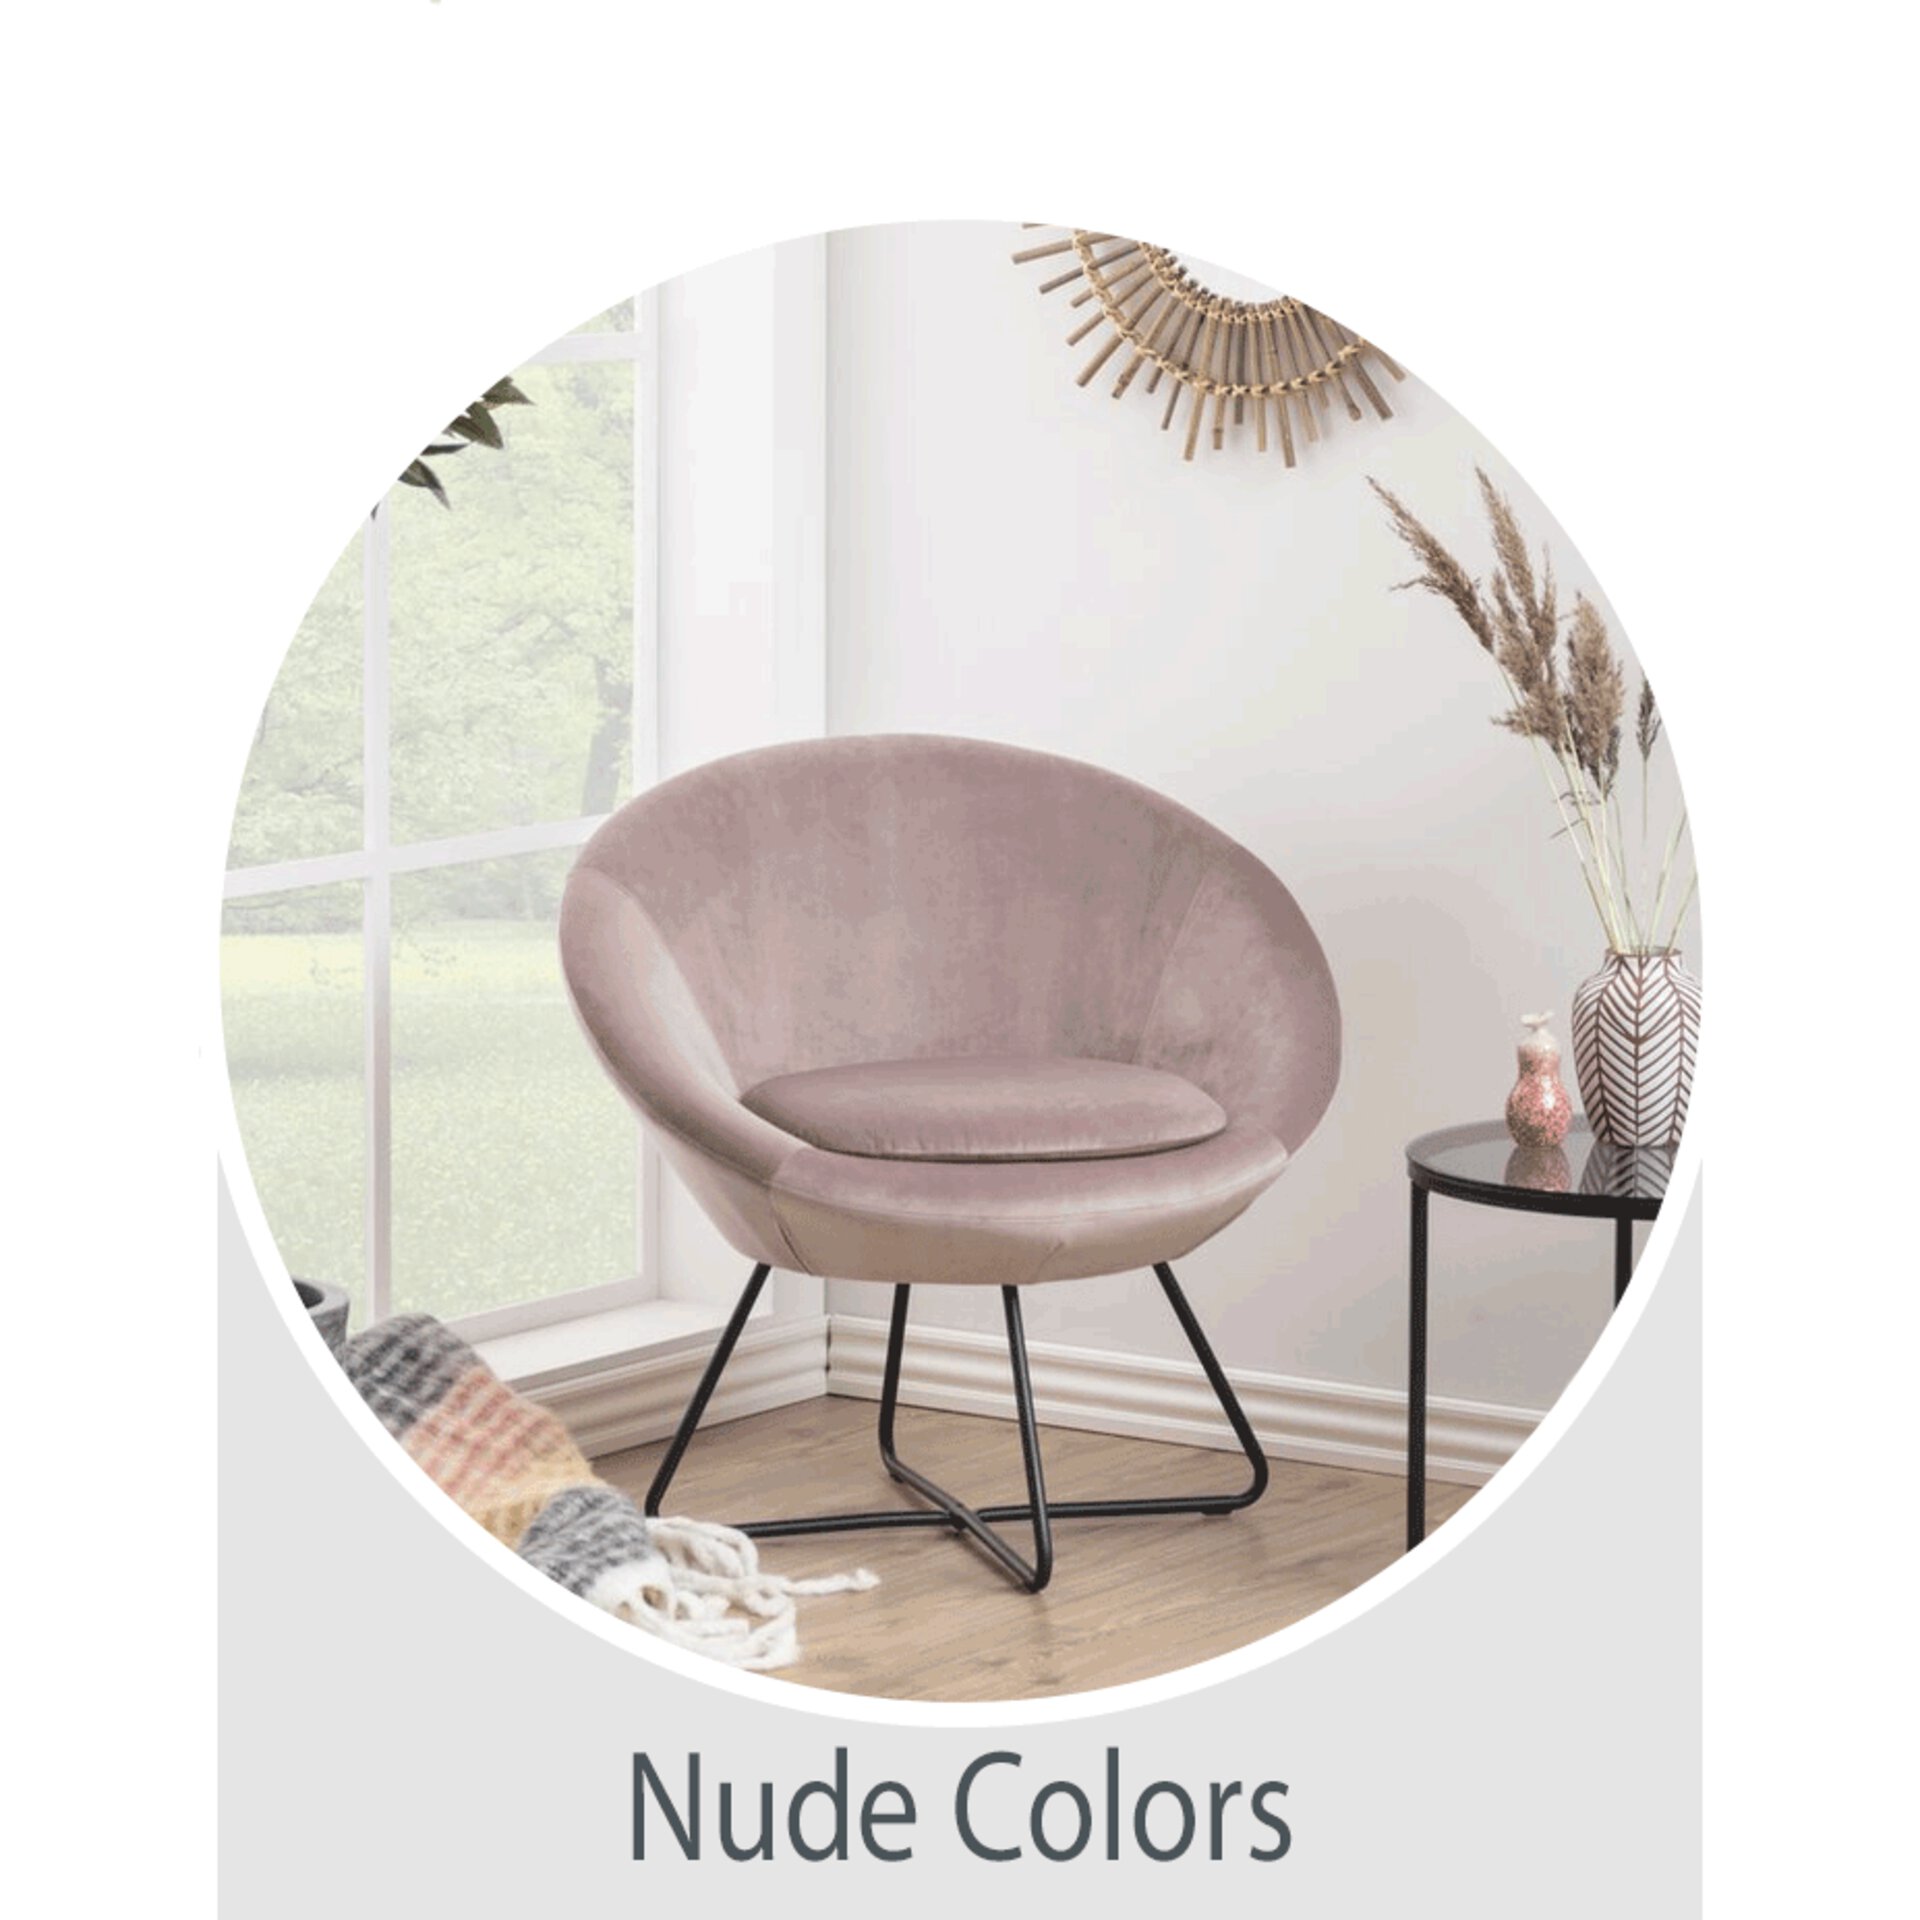 Der Wohntrend Nude Colors - jetzt bei Möbel Inhofer entdecken und inspirieren lassen